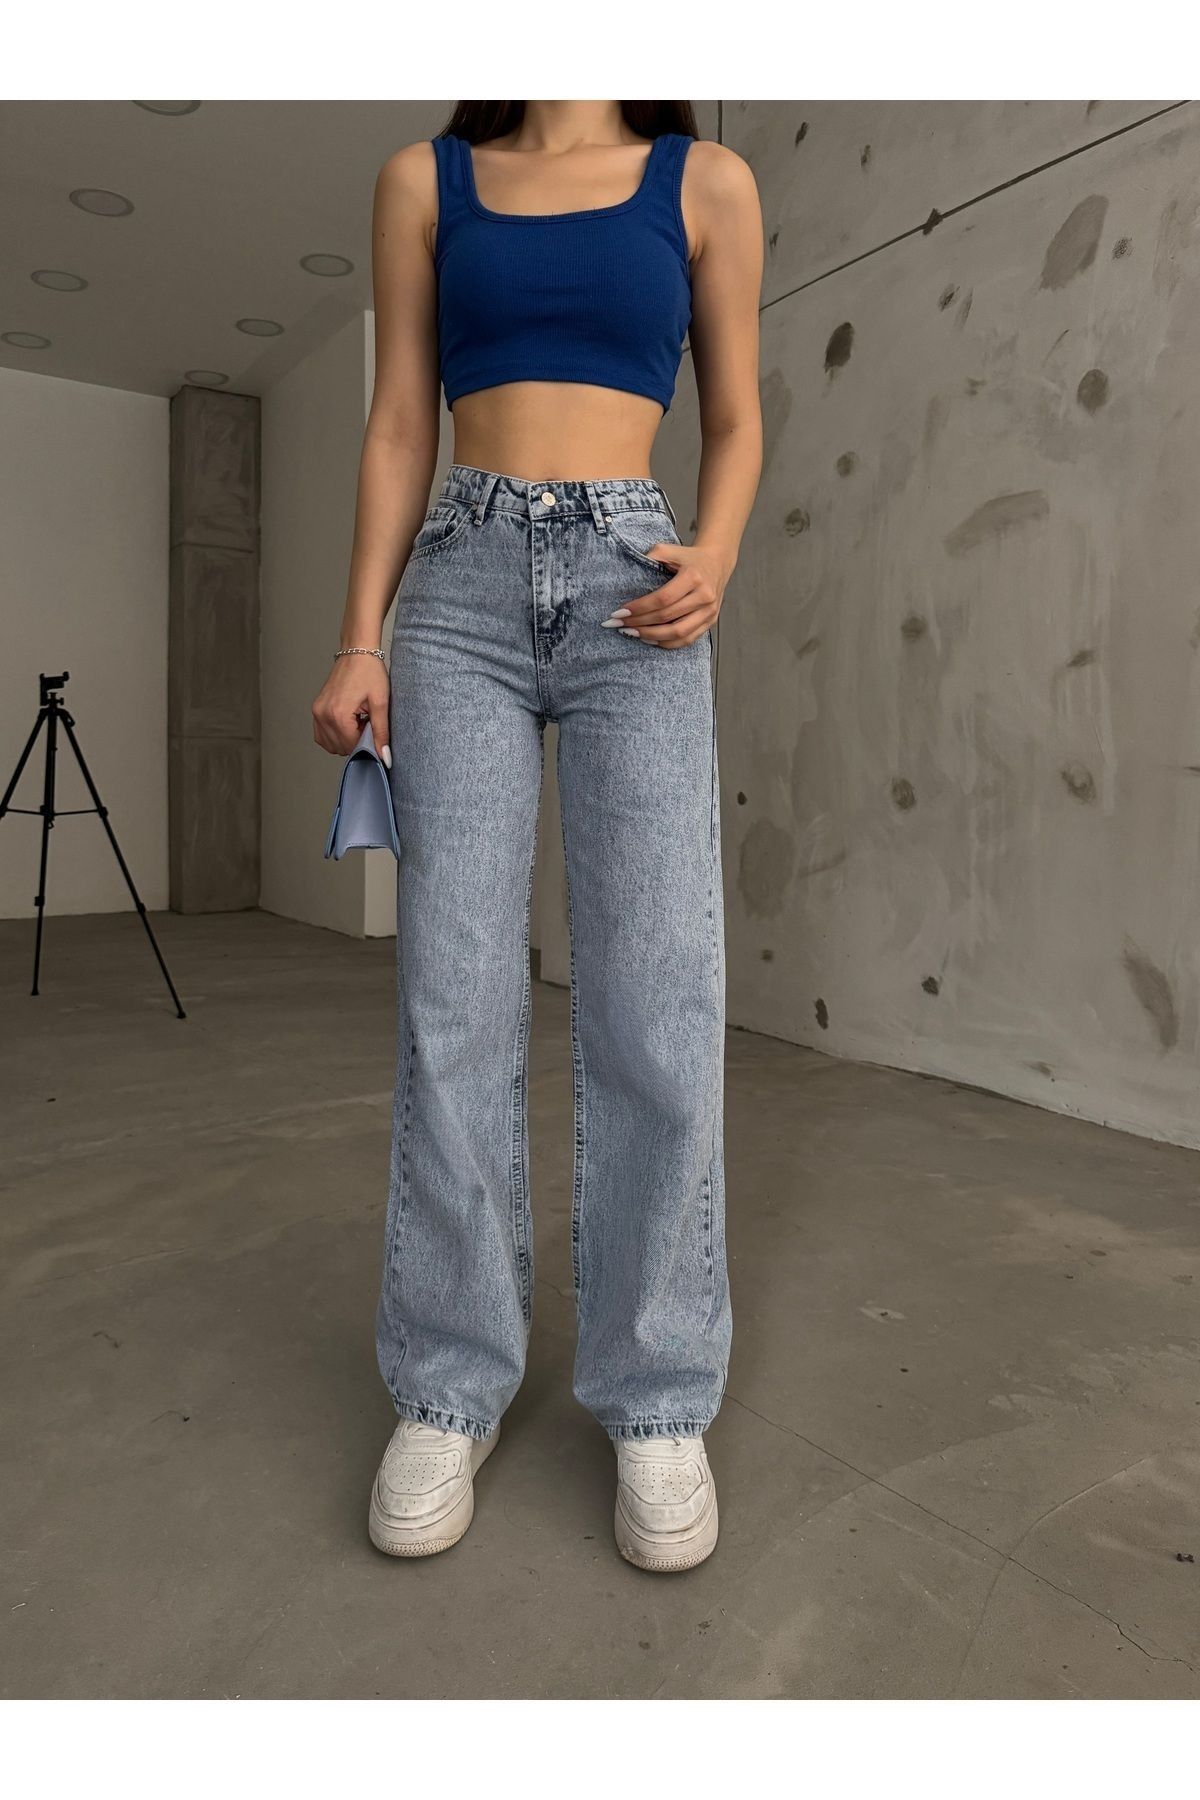 dressmix Kadın Açık Mavi Kar Yıkama Yüksek Bel Likralı Esnek Geniş Paça Kot Pantolon (Tam kalıptır)